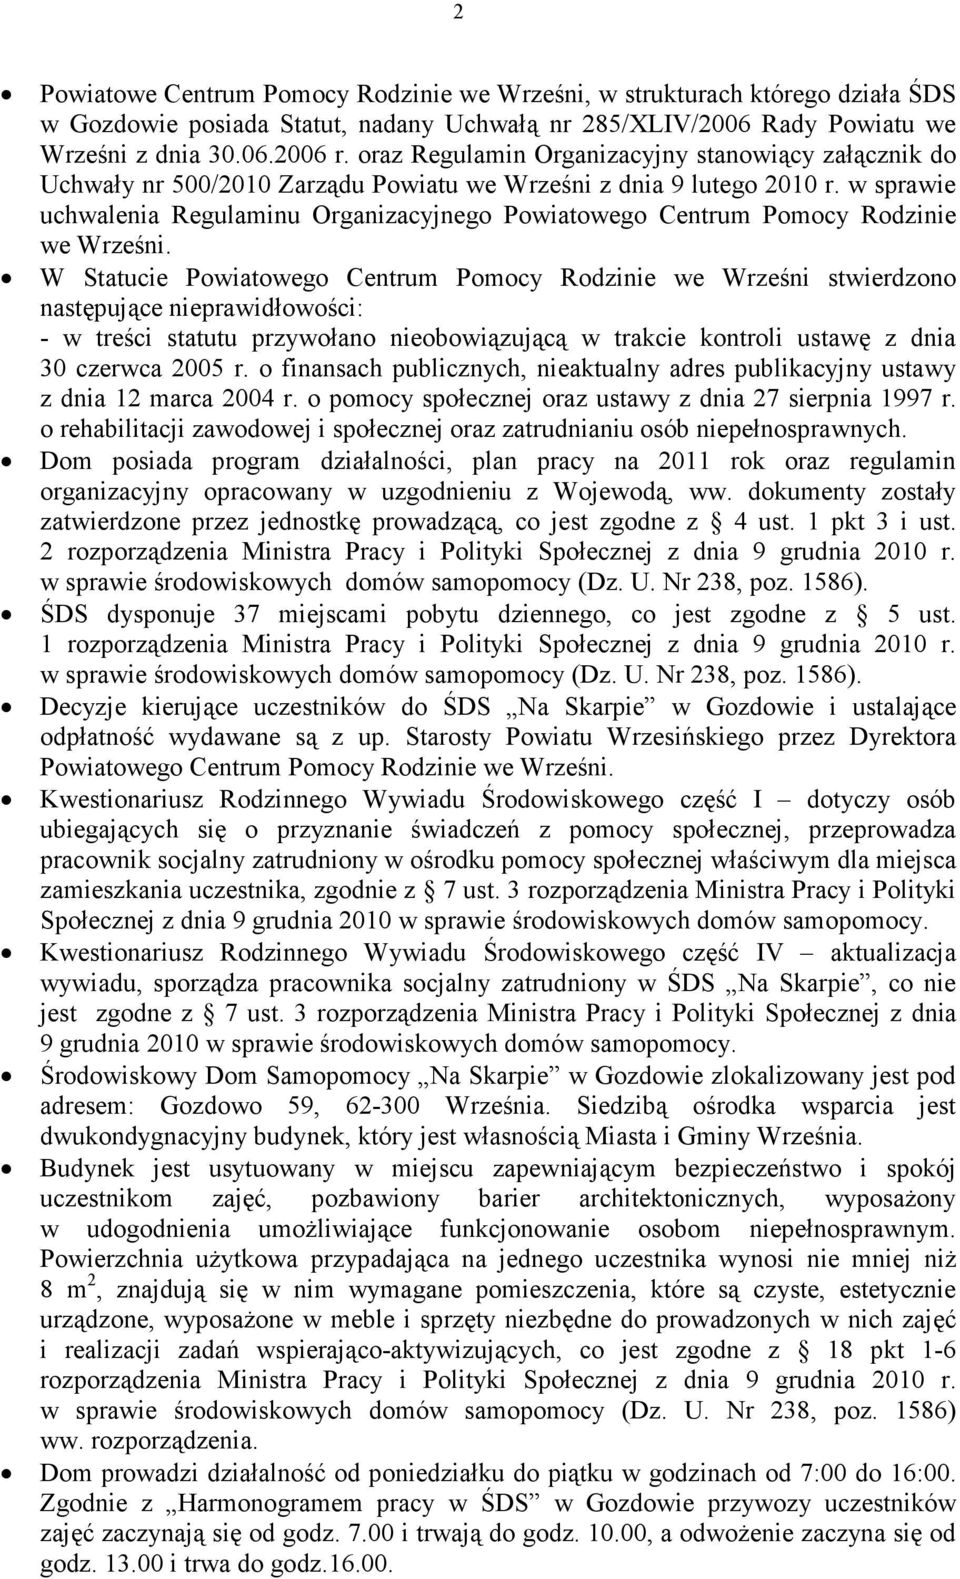 w sprawie uchwalenia Regulaminu Organizacyjnego Powiatowego Centrum Pomocy Rodzinie we Wrześni.